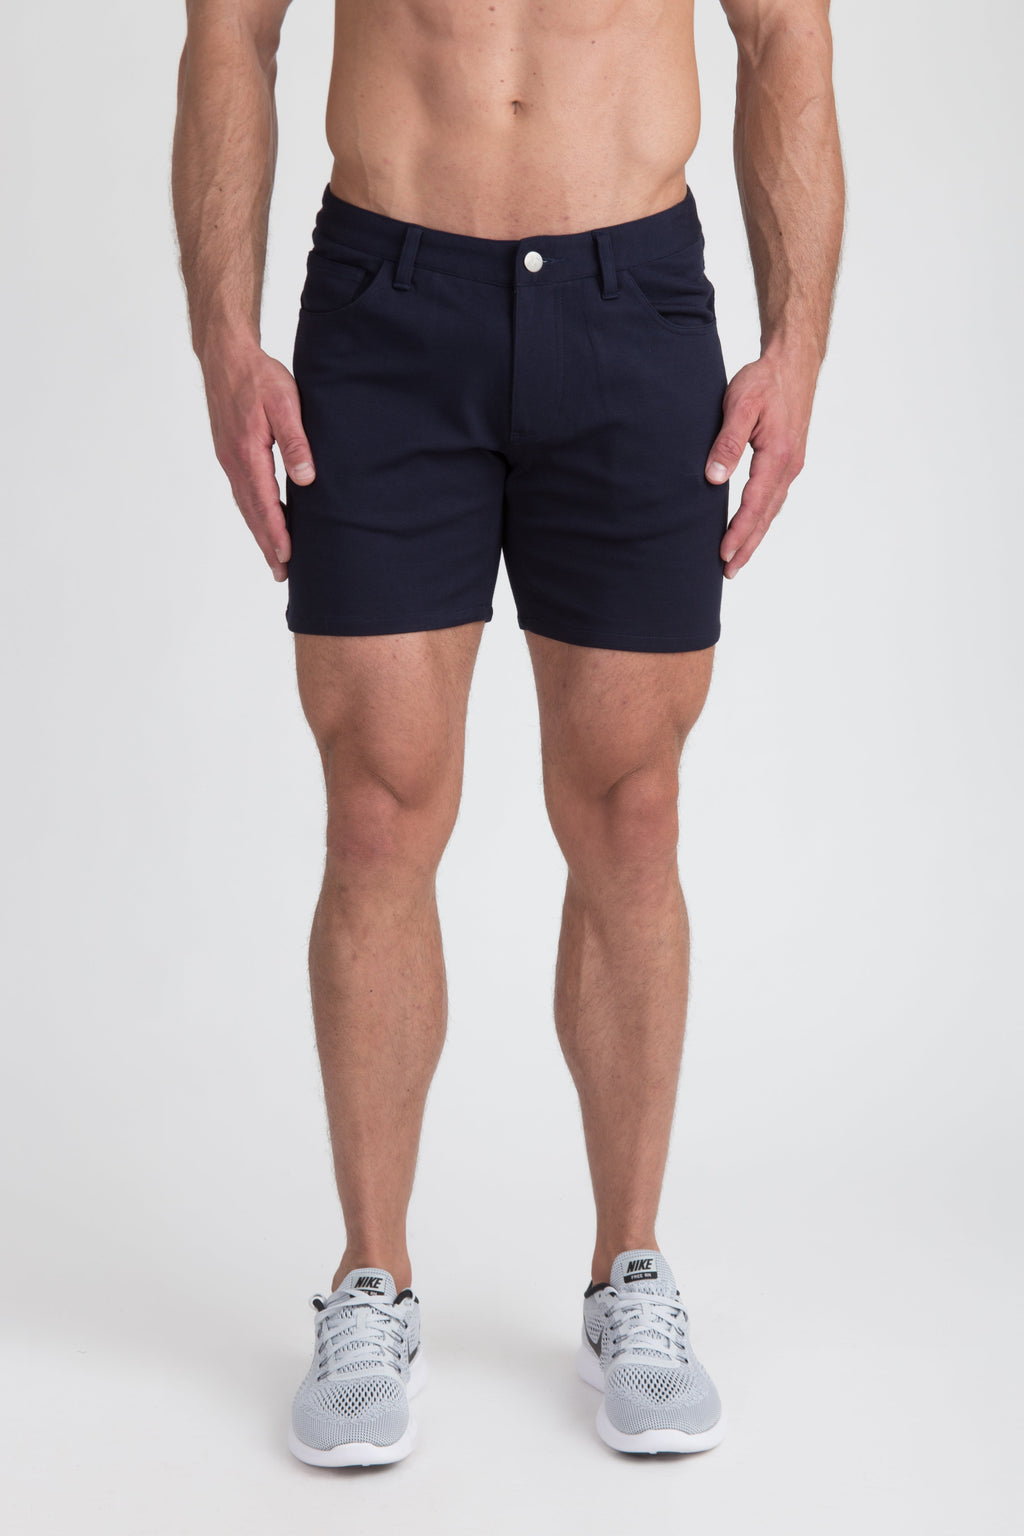 Buster Shorts - Navy